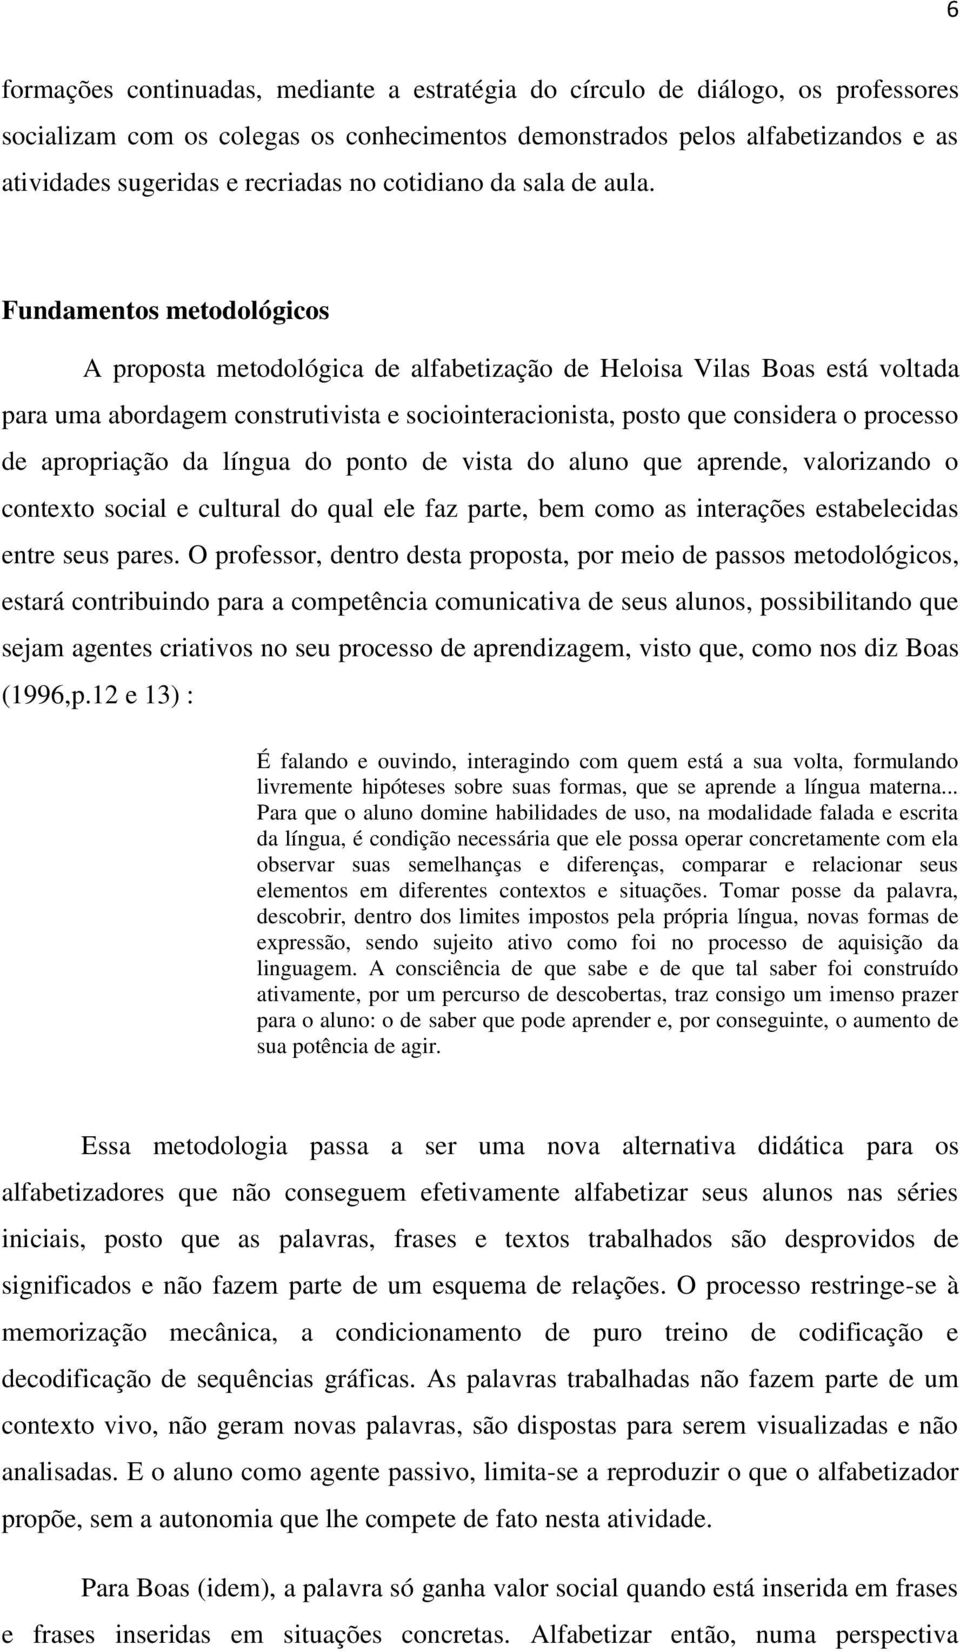 Fundamentos metodológicos A proposta metodológica de alfabetização de Heloisa Vilas Boas está voltada para uma abordagem construtivista e sociointeracionista, posto que considera o processo de